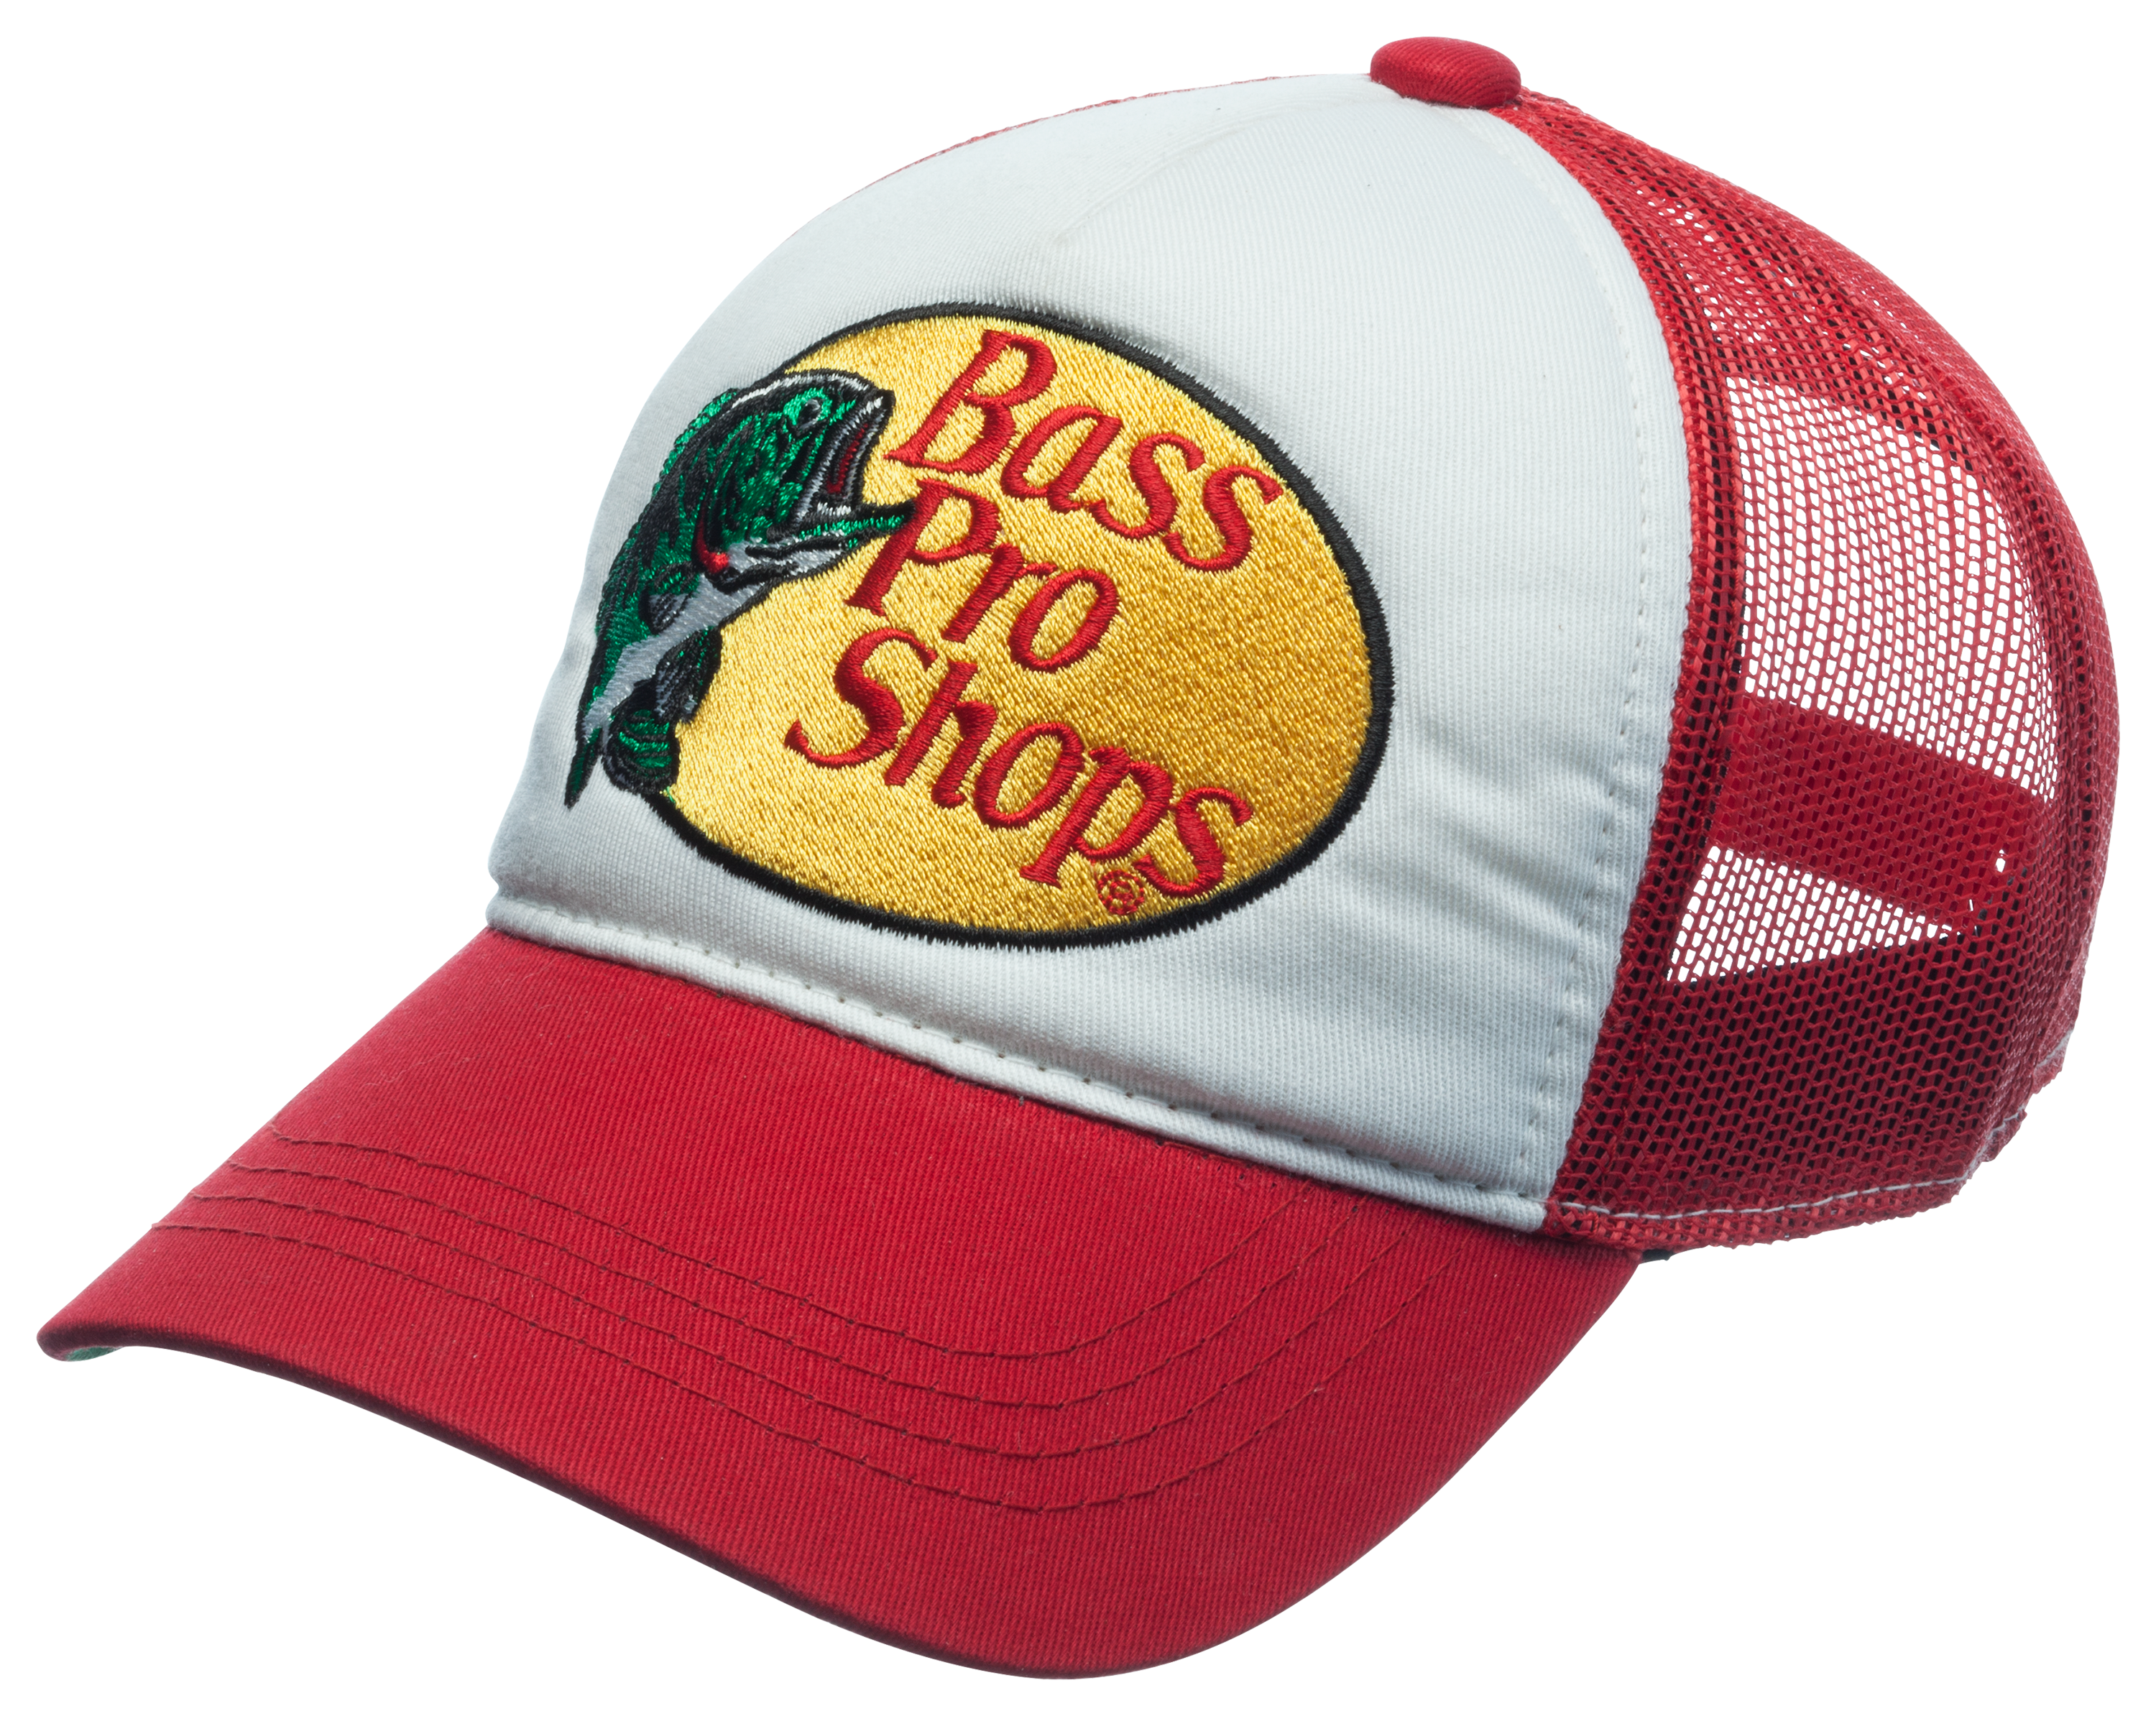 Bass Pro Shops Mesh Trucker Cap